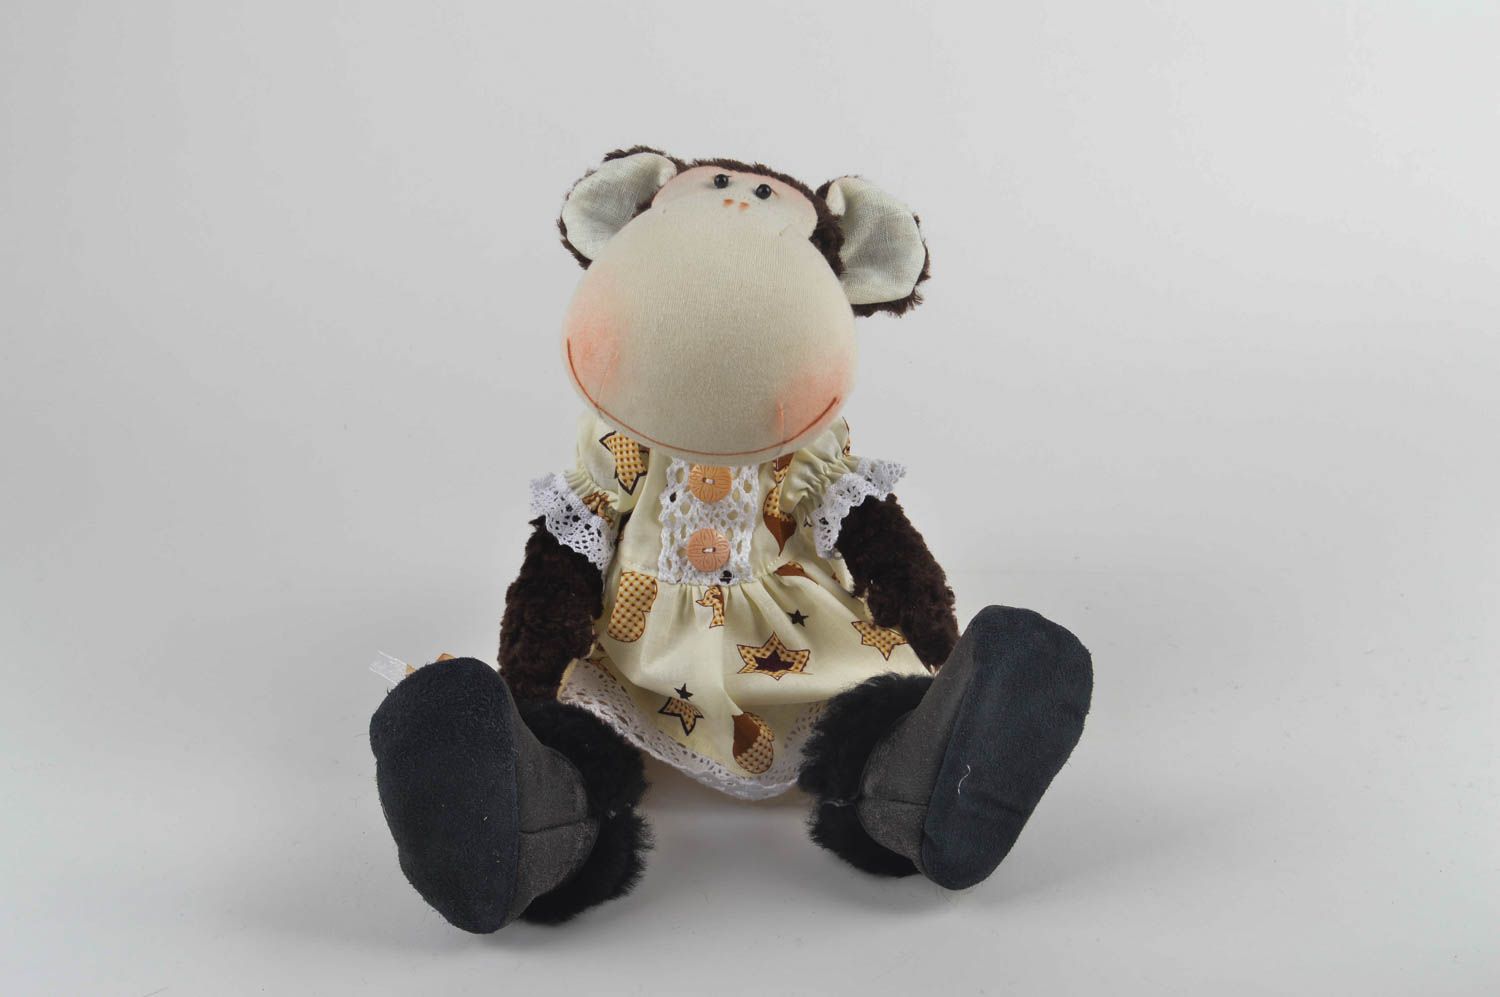 Игрушка обезьяна хэнд мэйд детская игрушка из льна мягкая игрушка необычная фото 5